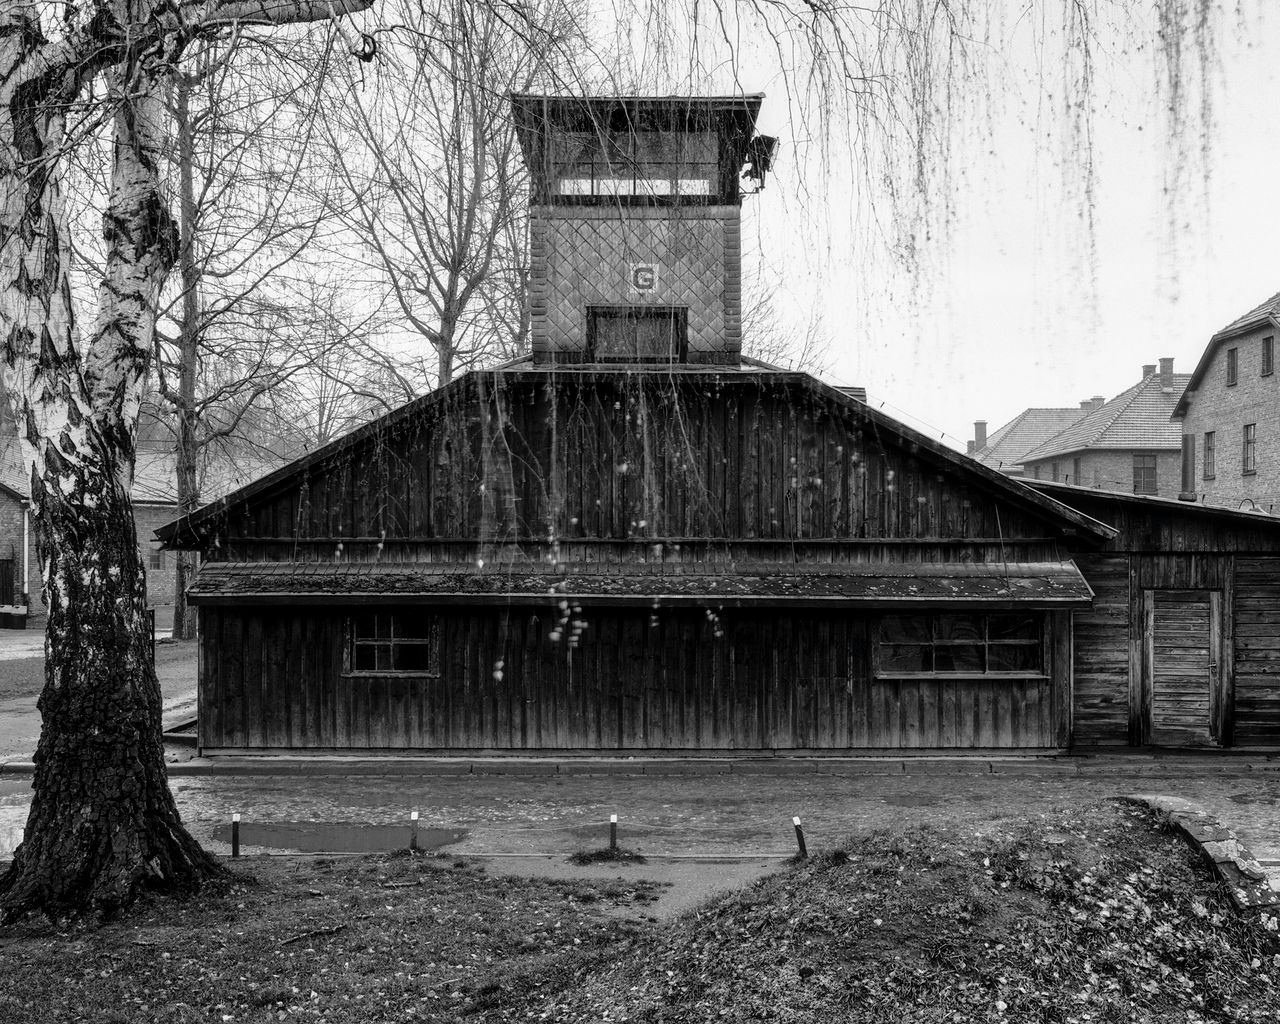 Cykl zdjęć "Auschwitz – ultima ratio ery modernizmu" wykonanych przez Tomasza Lewandowskiego powstał w celu umożliwienia analizy architektury budynków obozu zagłady. Fotograf w swojej pracy zadbał o to, by zdjęcia wykonane były w podobnych warunkach oświetleniowych, tak by ich odmienność nie wpływała na neutralną analizę.